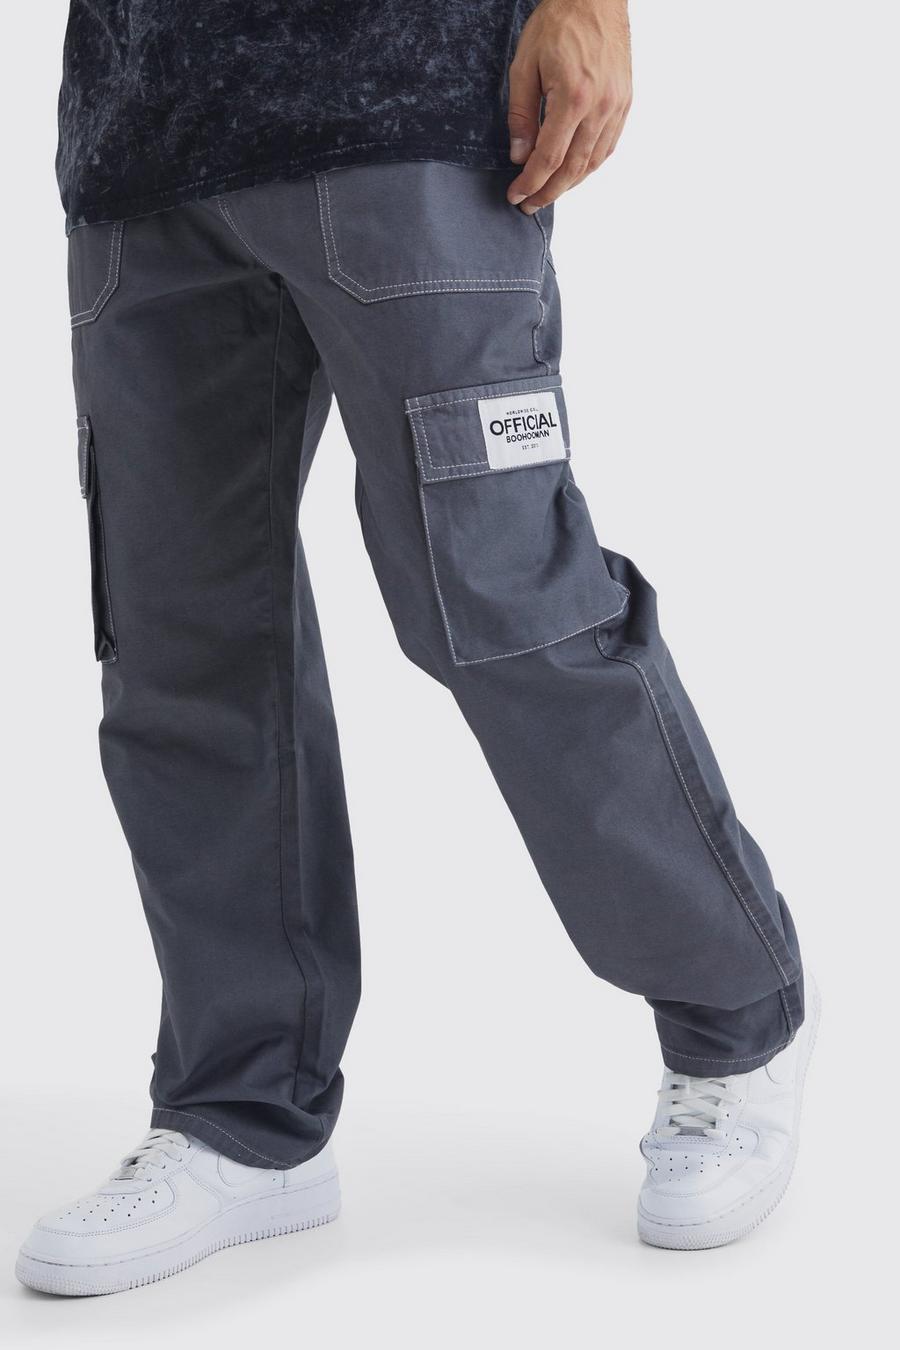 Pantaloni Cargo rilassati con cuciture a contrasto ed etichetta in tessuto, Charcoal